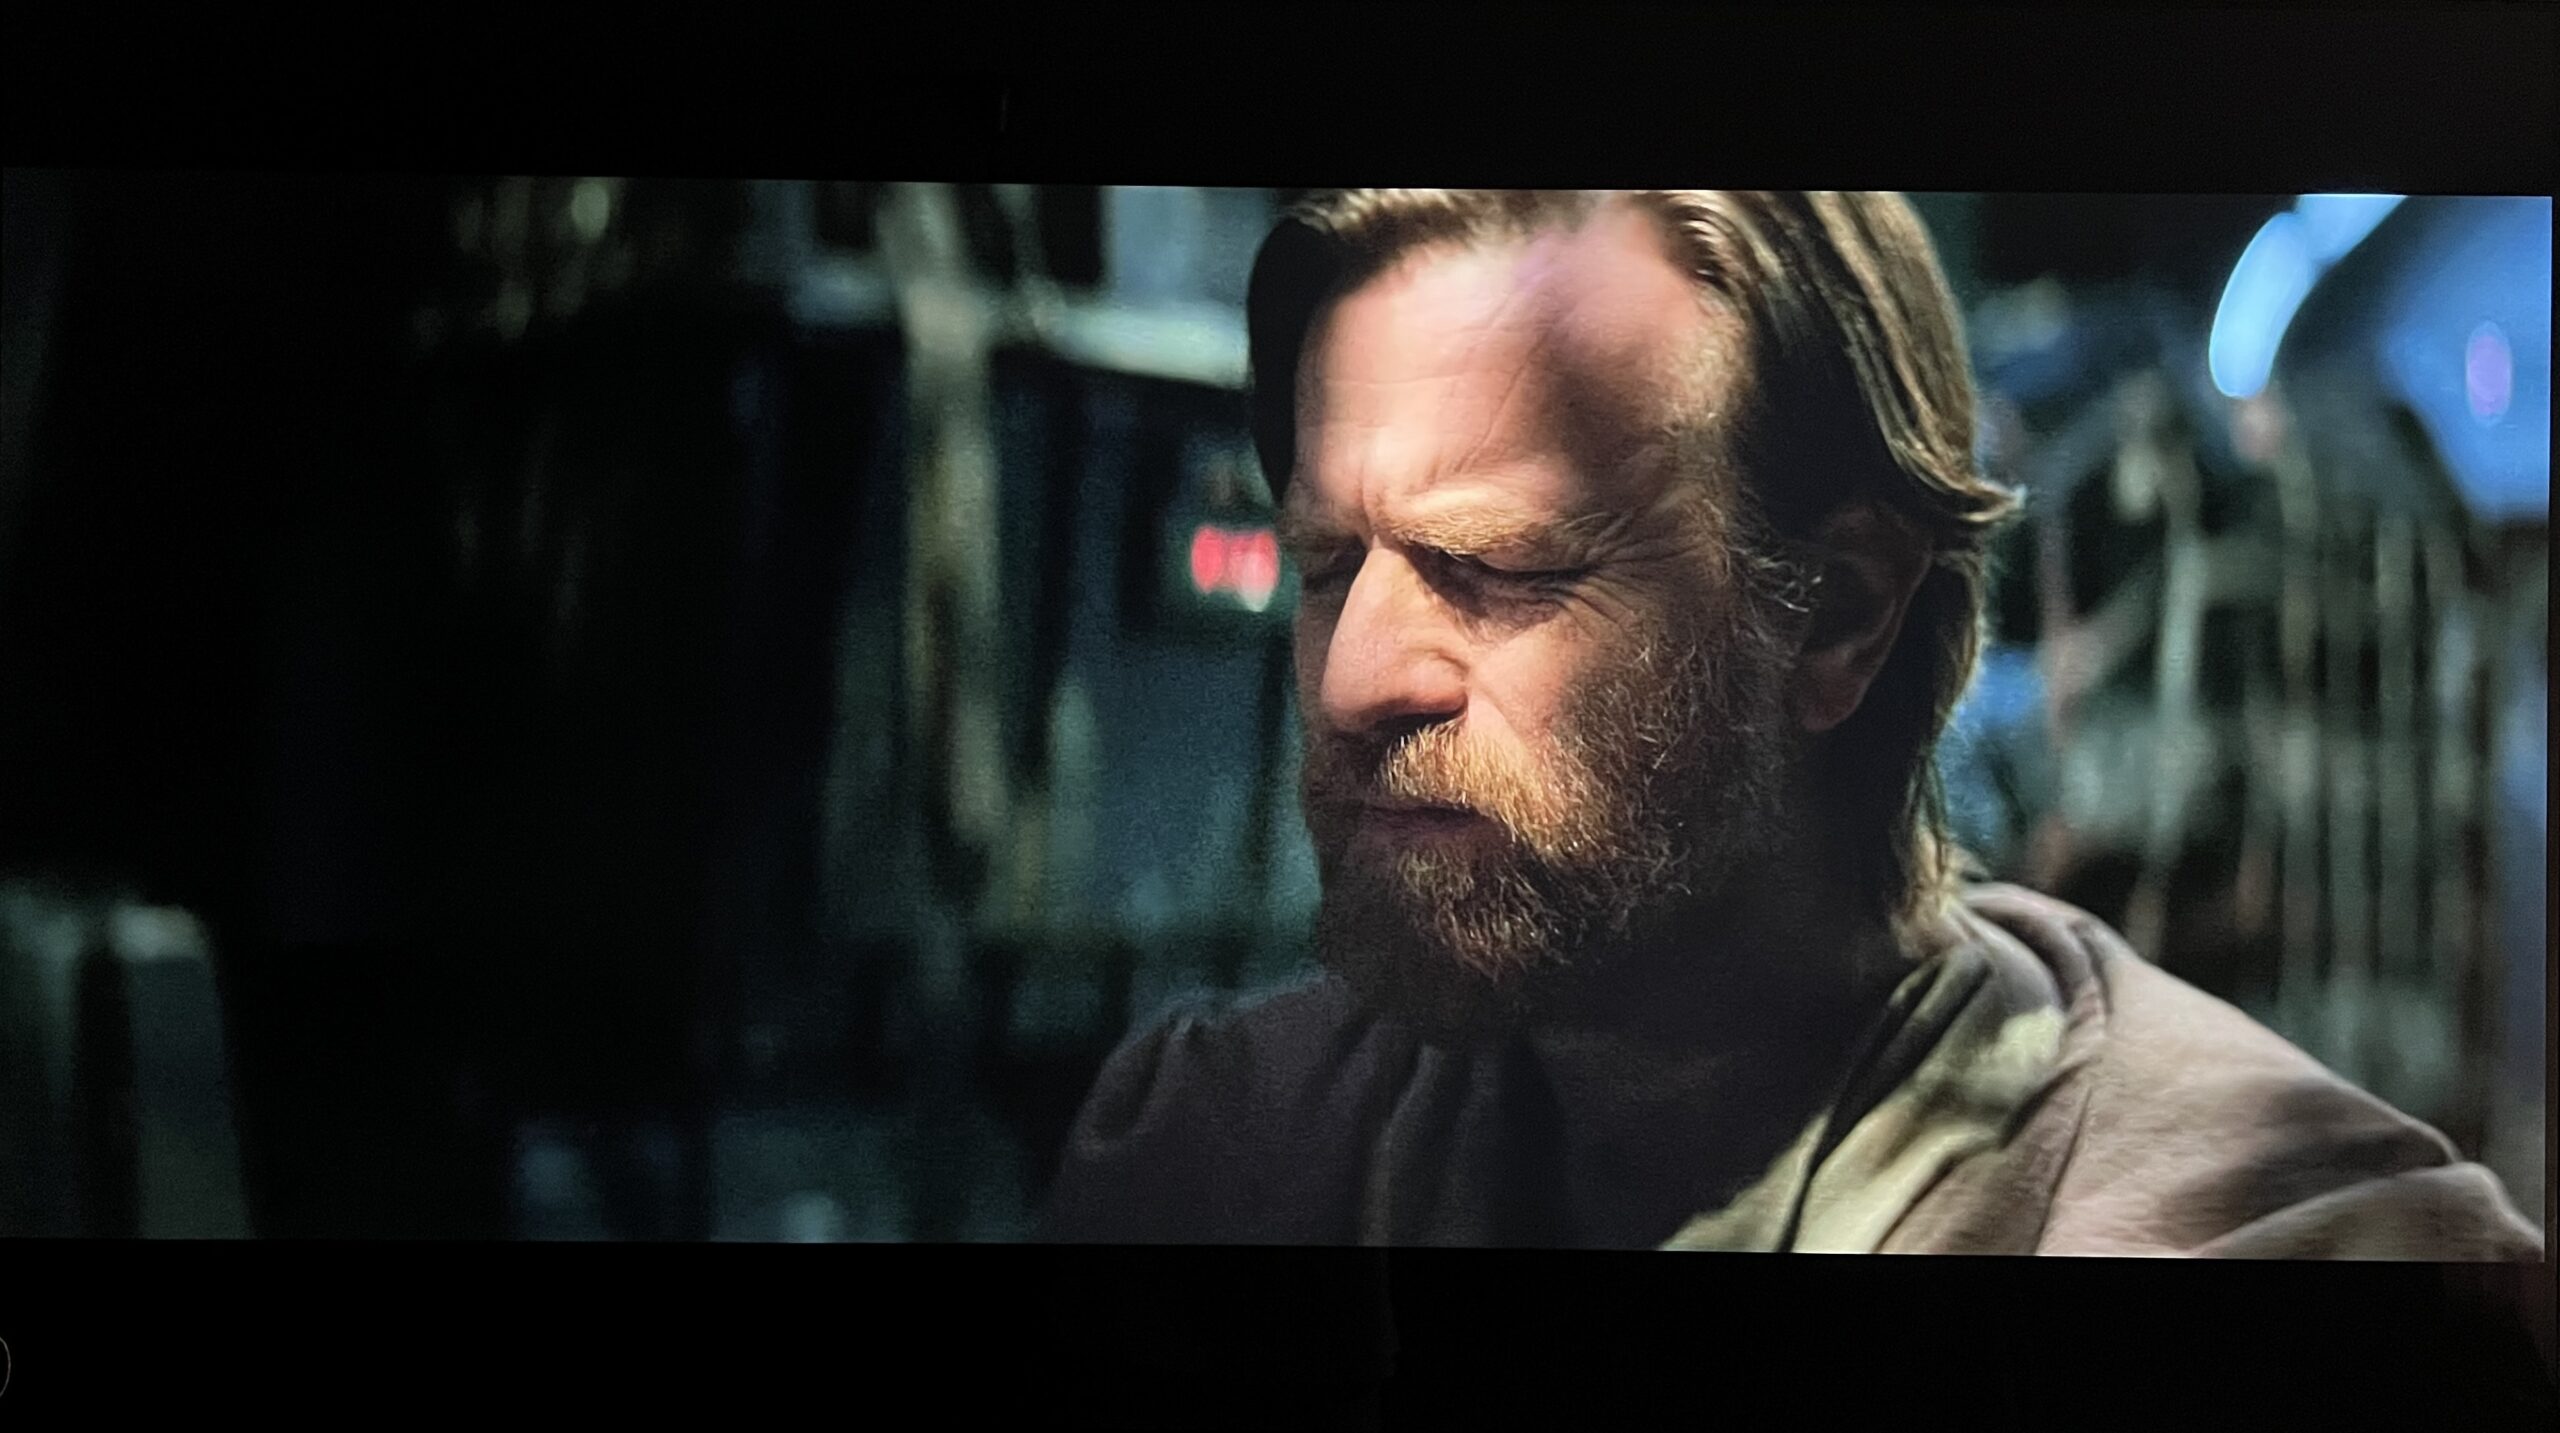 Kadr z serialu "Obi-Wan Kenobi" przed kalibracją